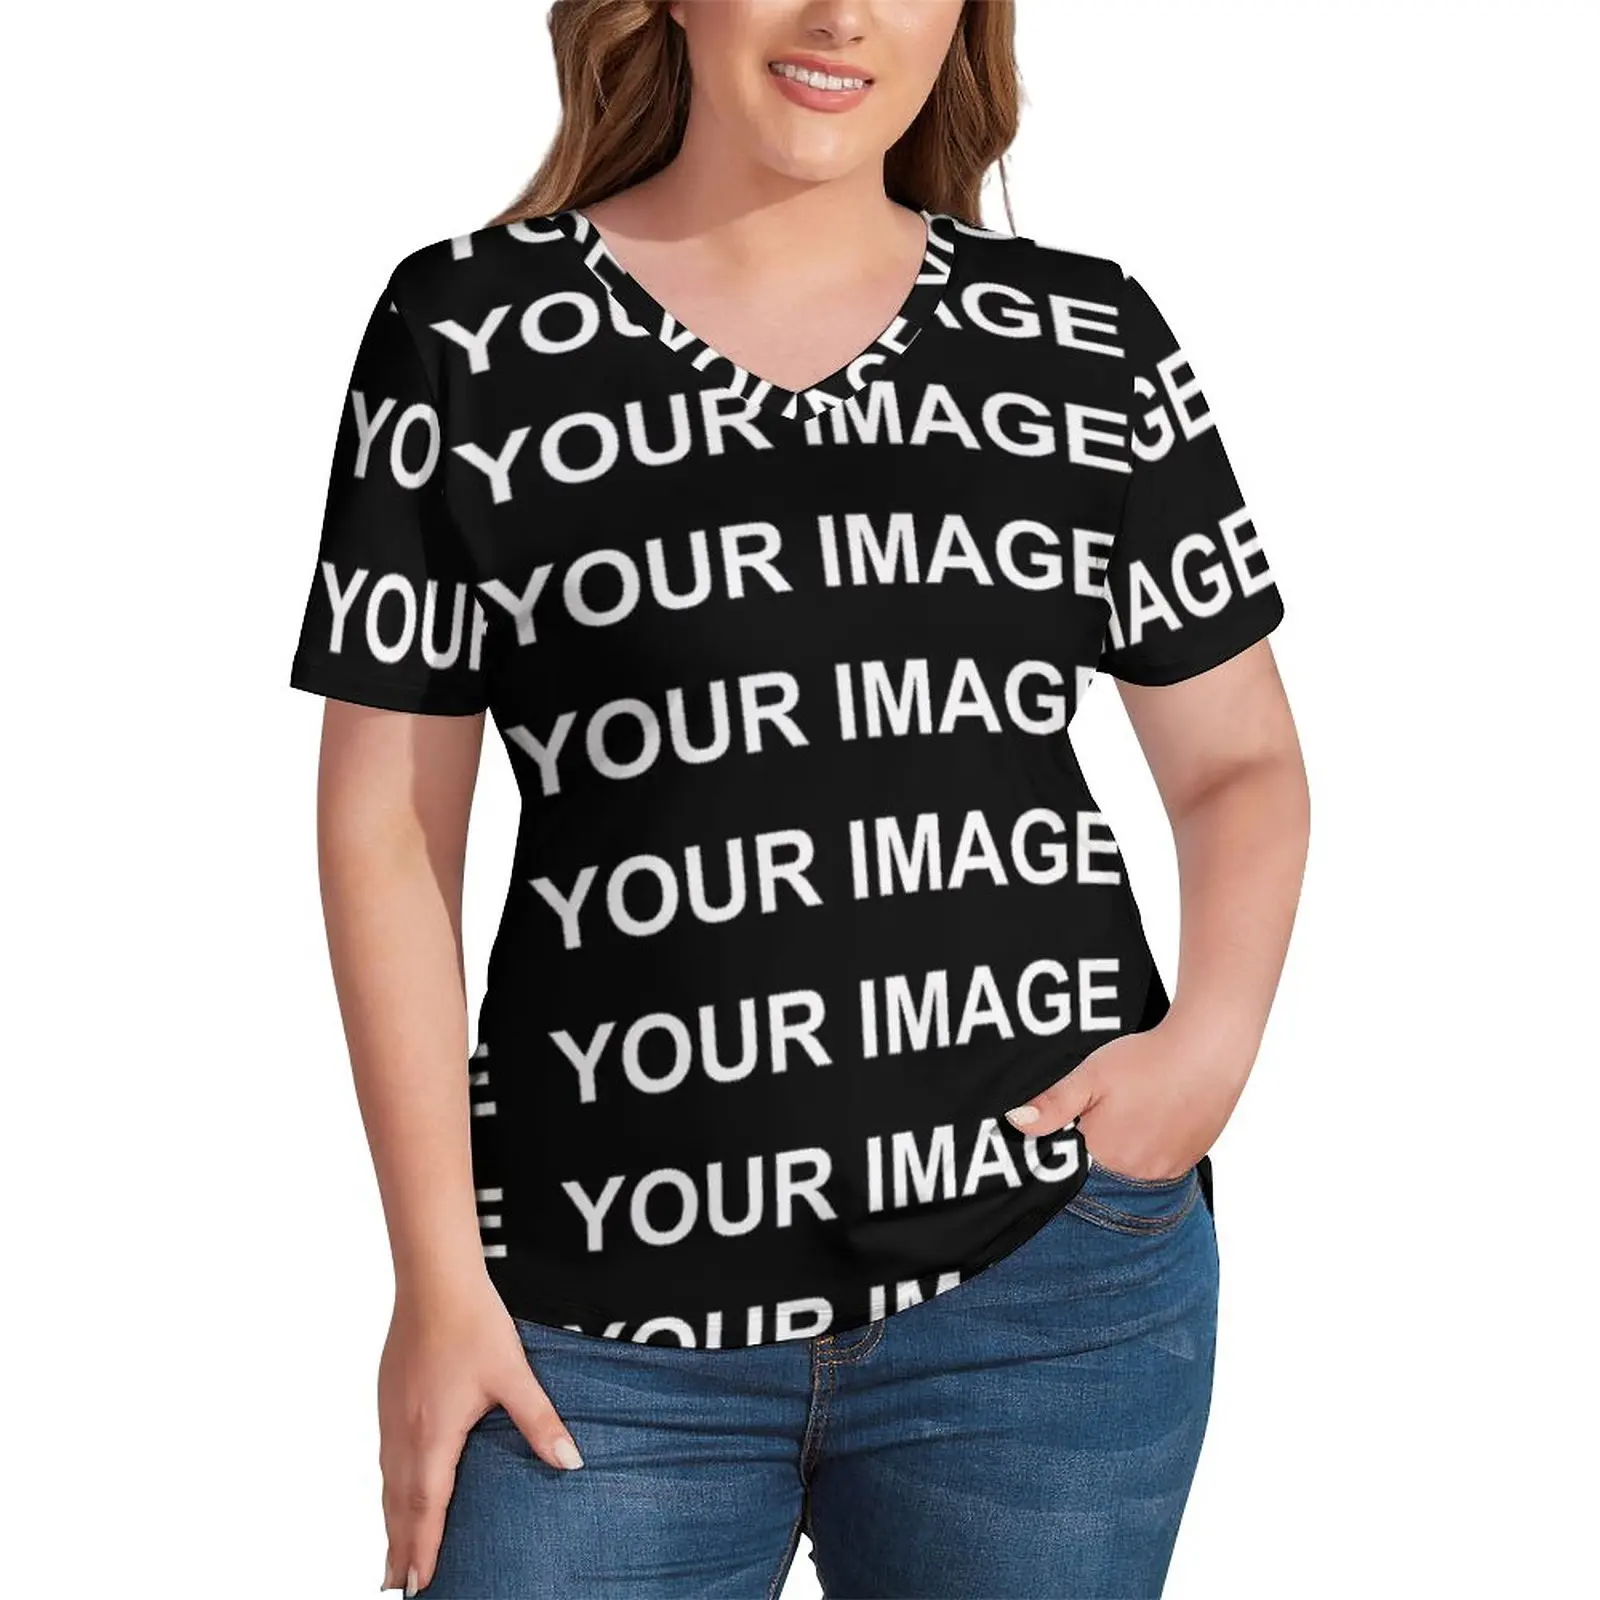 Your Image Customized T Shirts Custom Made Design V Neck Basic T-Shirt Short Sleeve Lady Modern Tshirt Summer Tees Plus Size 4XL